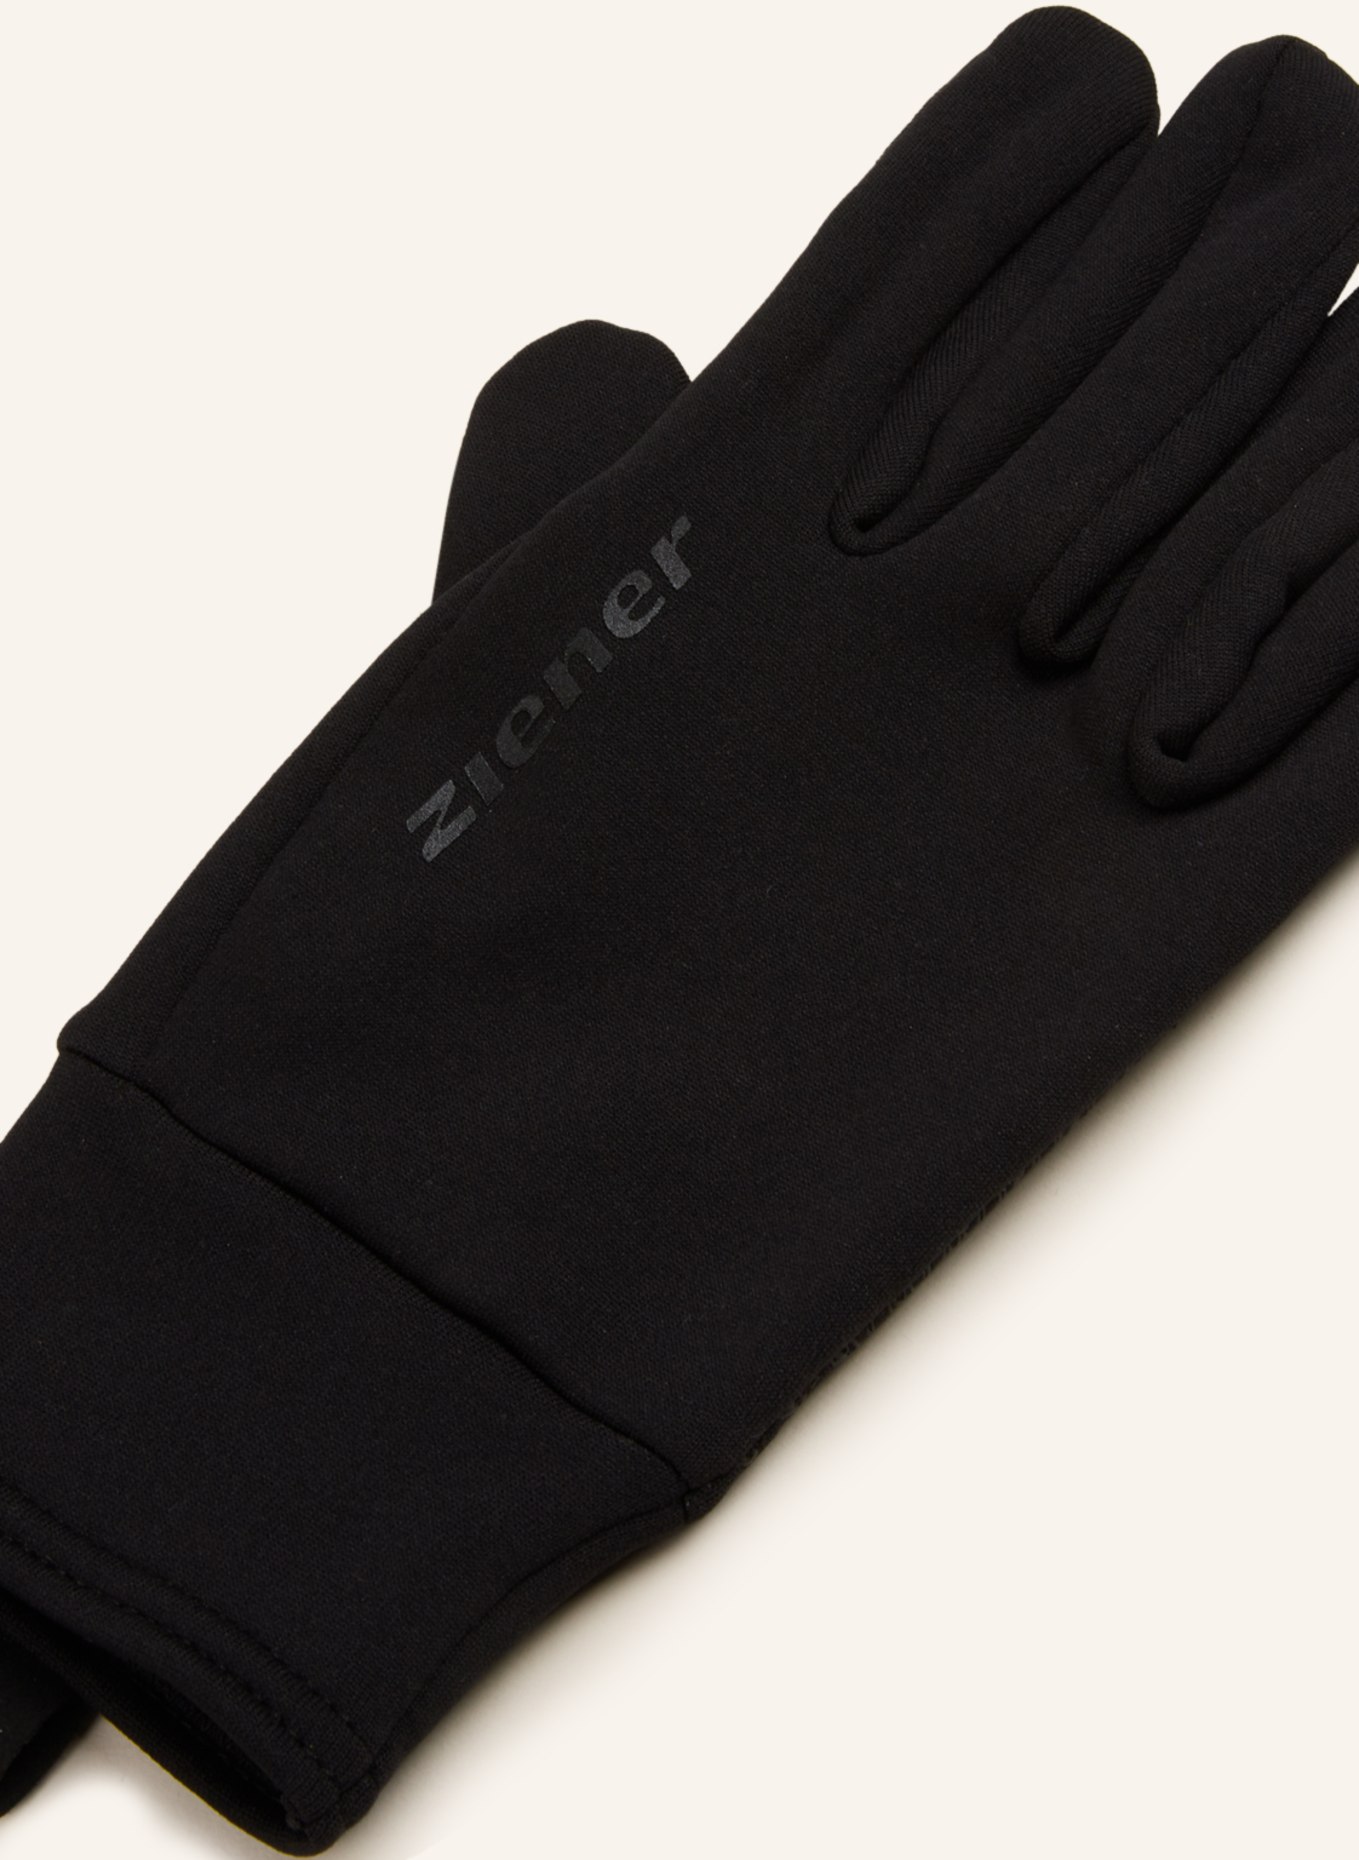 ziener Multisport-Handschuhe ISANTO TOUCH in mit schwarz Touchscreen-Funktion